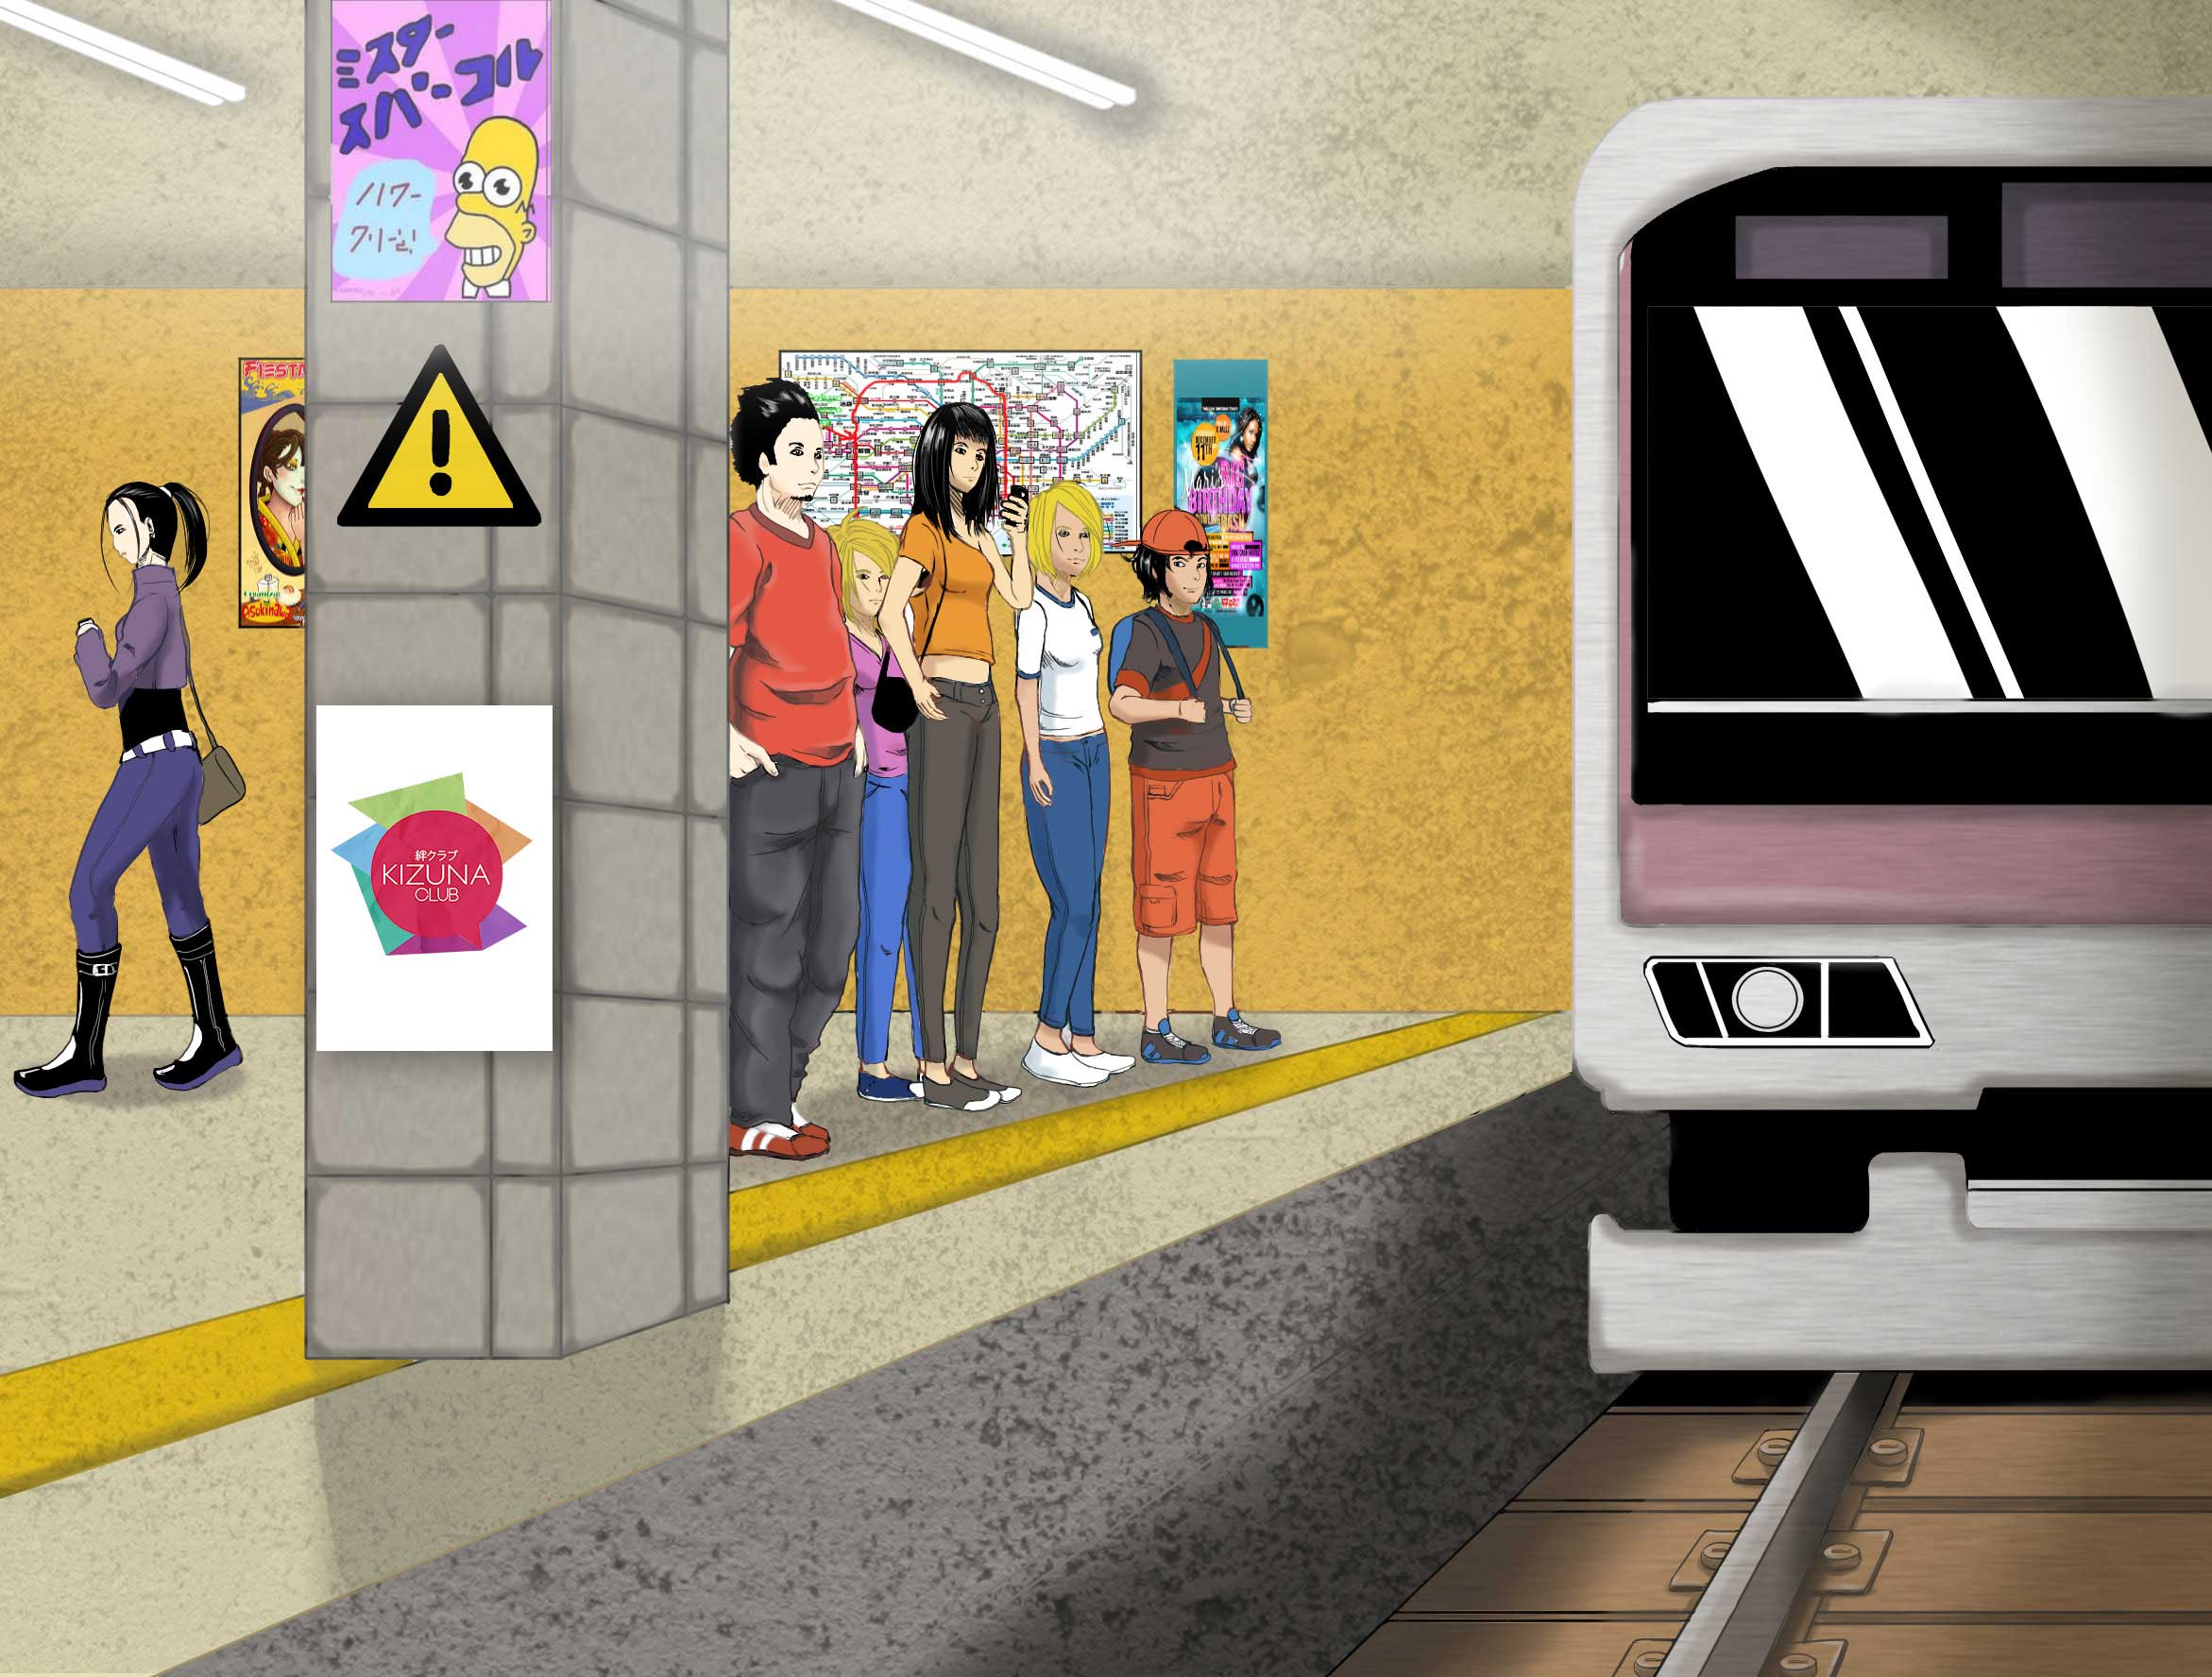 Los sistemas de transporte en Japón: No te quedes en un sólo lugar